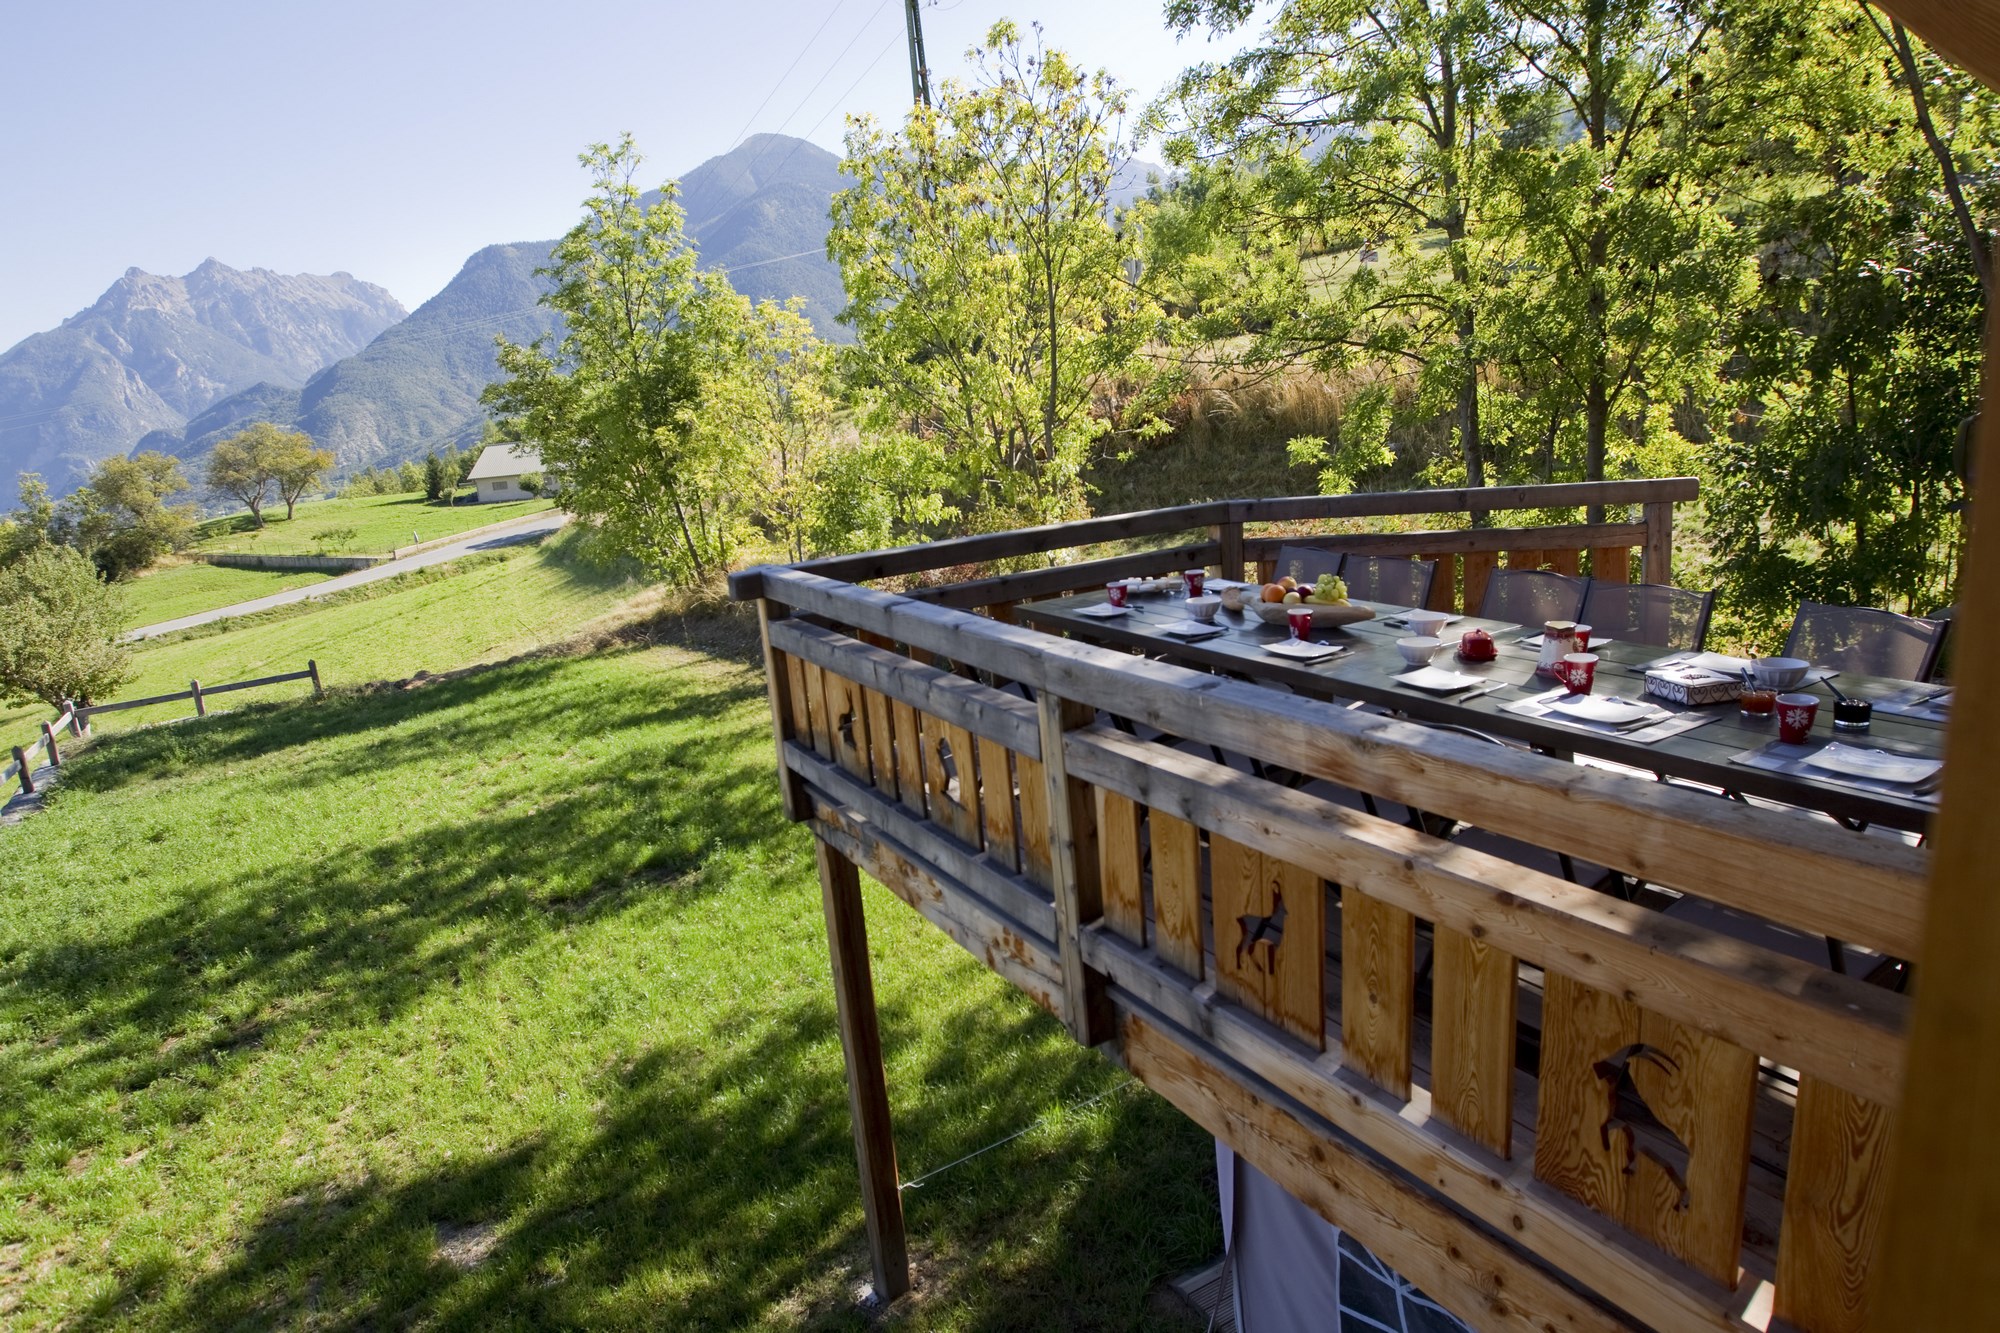 Chalet de montagne familial à louer à Risoul Vars Alpes du sud